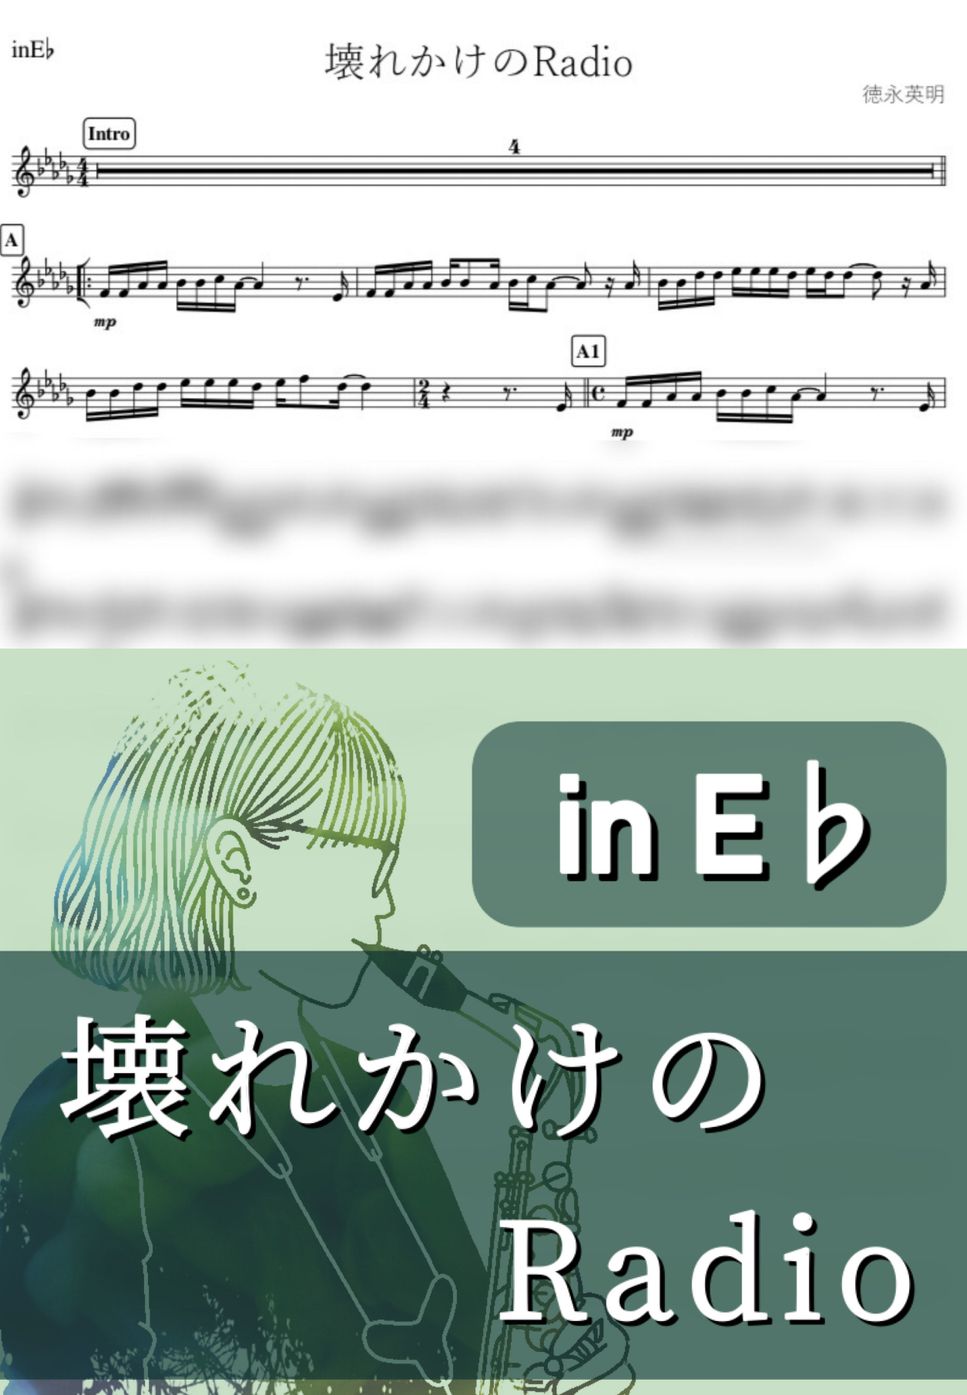 徳永英明 - 壊れかけのRadio (E♭) by kanamusic